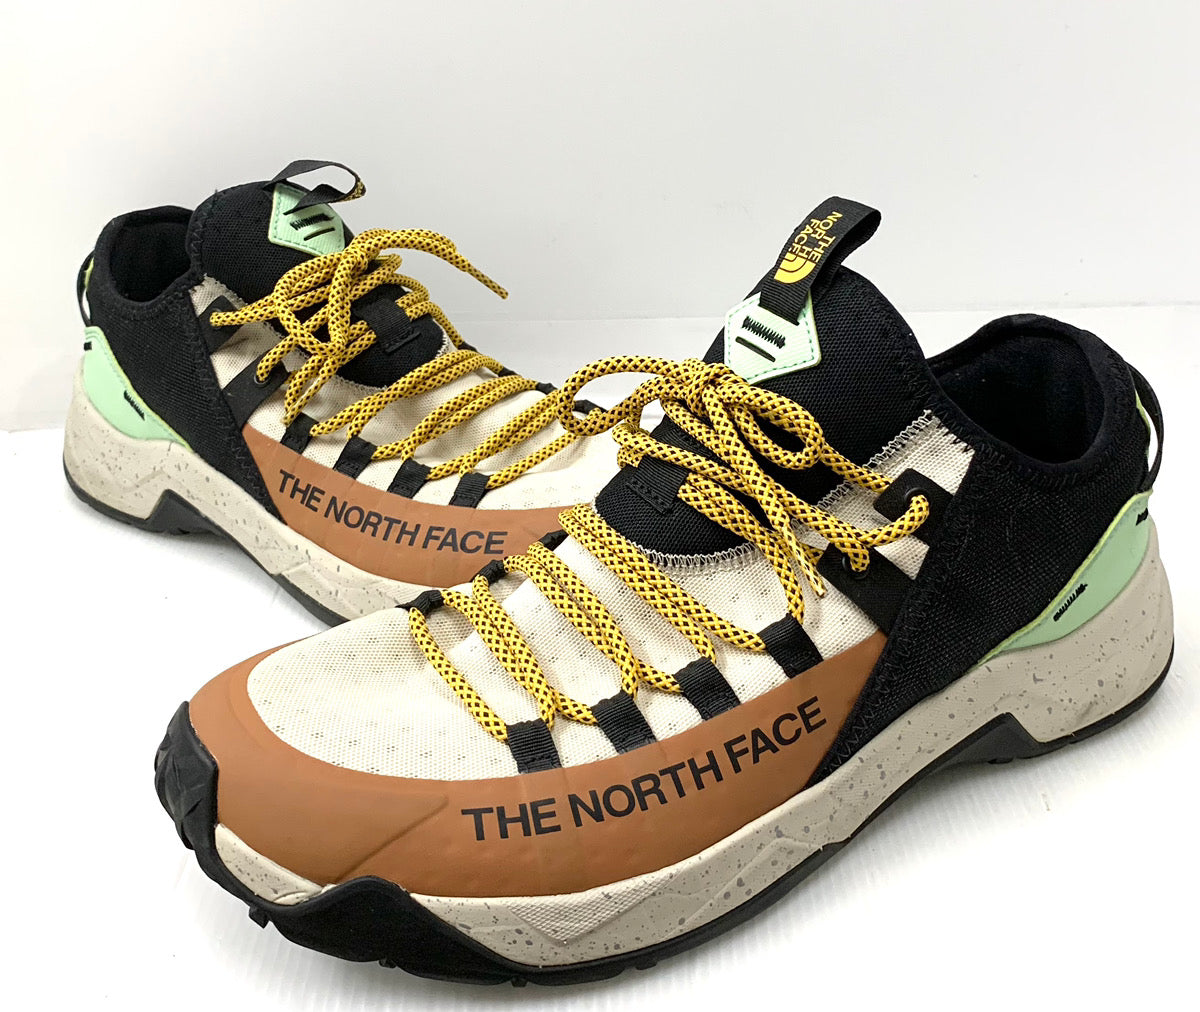 ノースフェイス THE NORTH FACE TRAIL ESCAPE EDGE NF0A3X13 メンズ靴 スニーカー ロゴ マルチカラー 29cm  201-shoes520